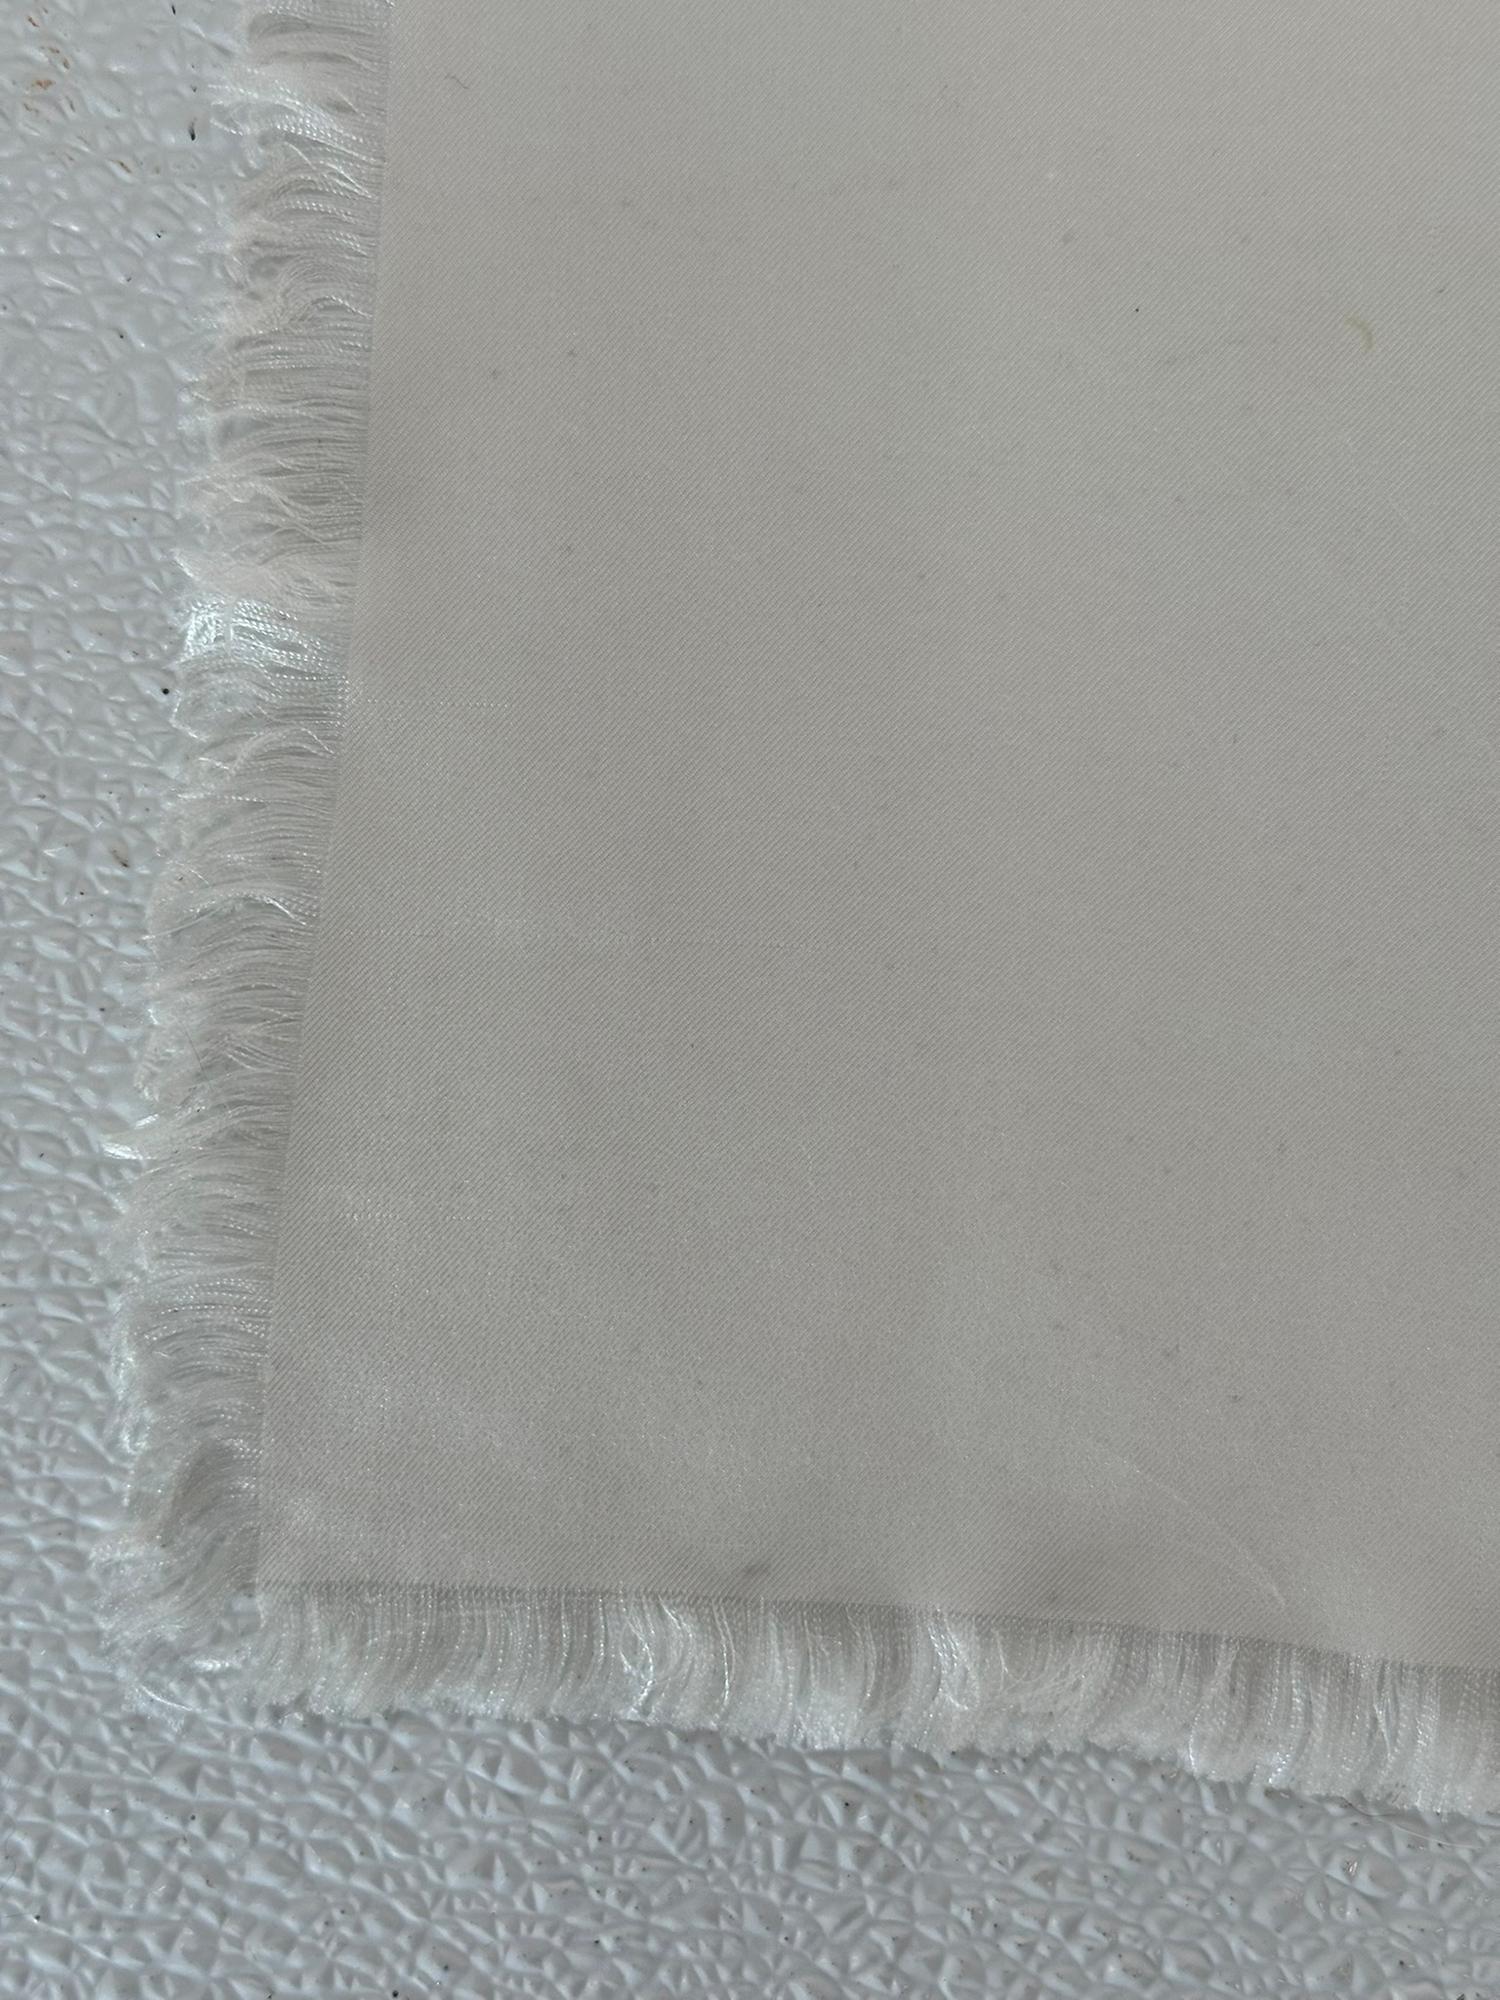 Yves Saint Laurent Rare White Silk Fringe Hem Scarf Un Silhouette Parisienne  For Sale 6